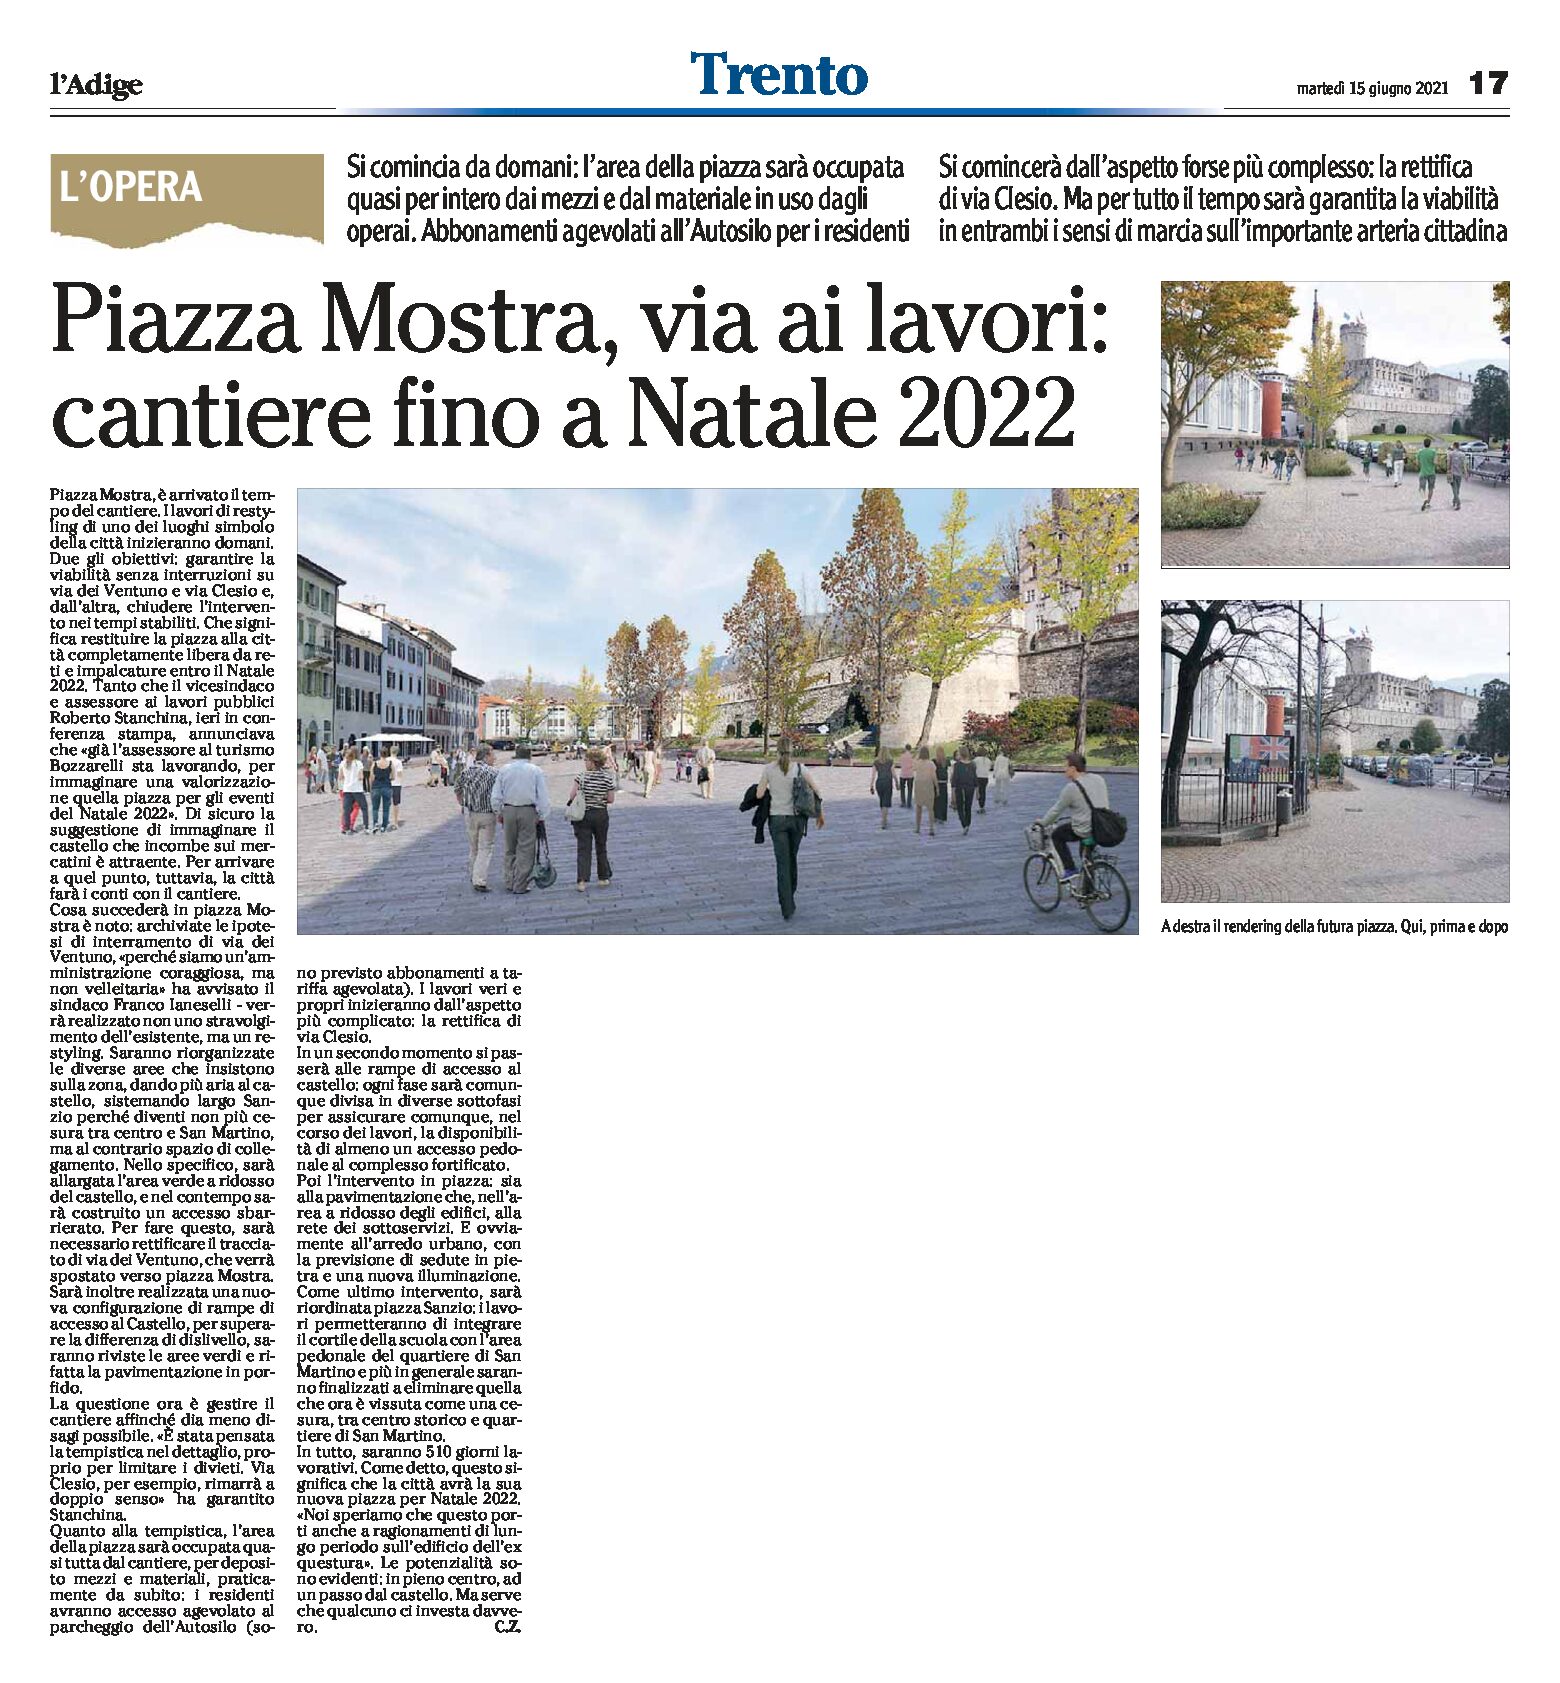 Trento, Piazza Mostra: via ai lavori, cantiere fino a Natale 2022